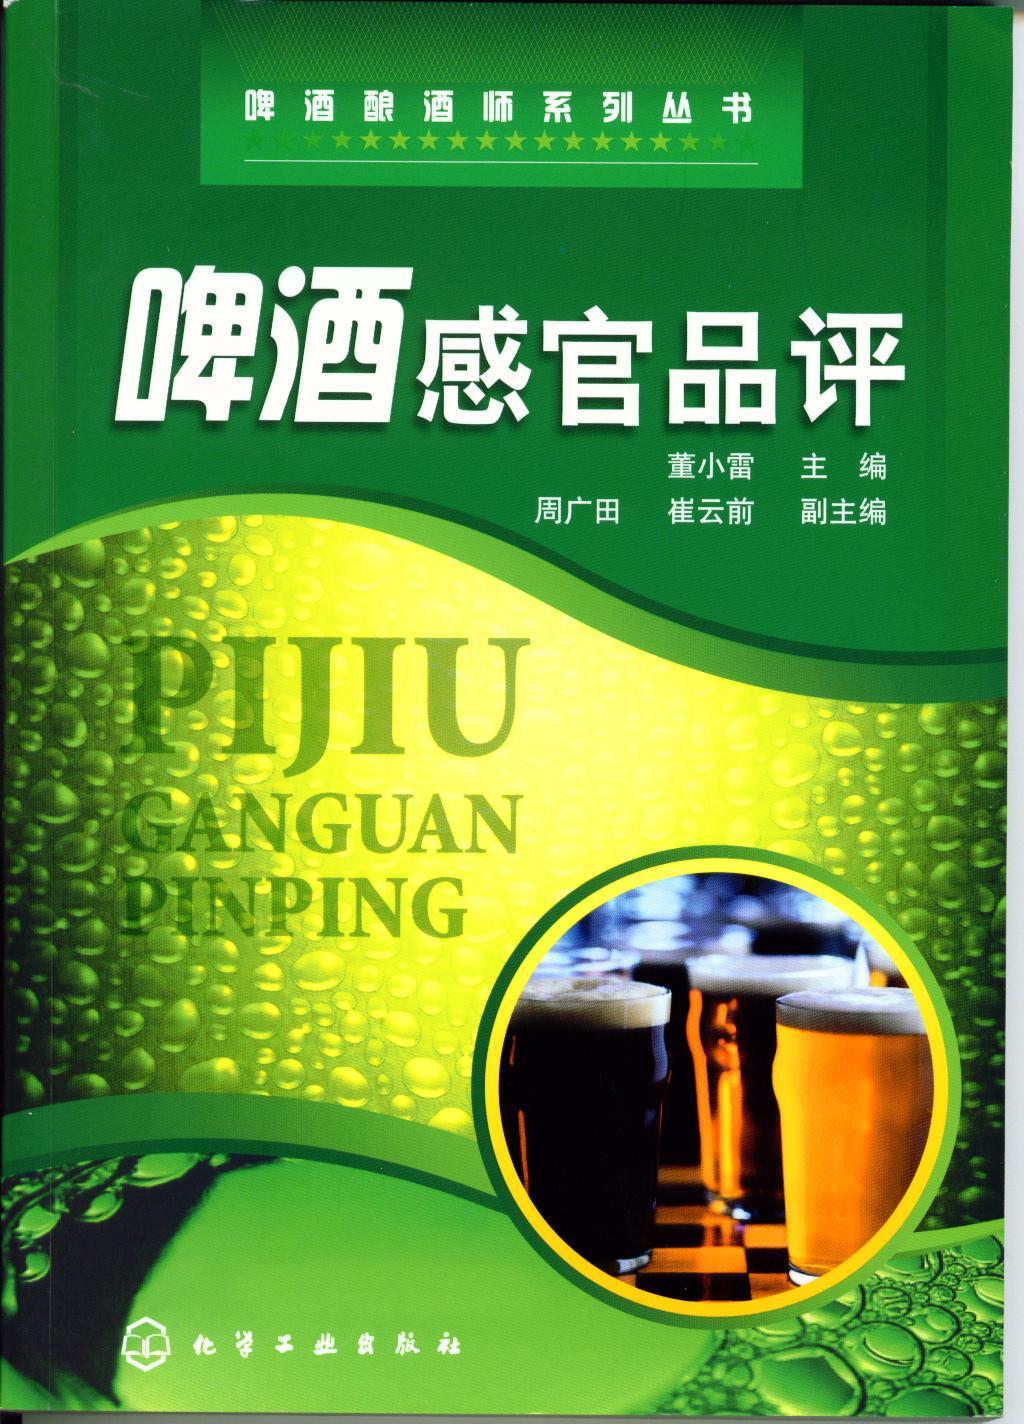 董小雷啤酒感官品评2007